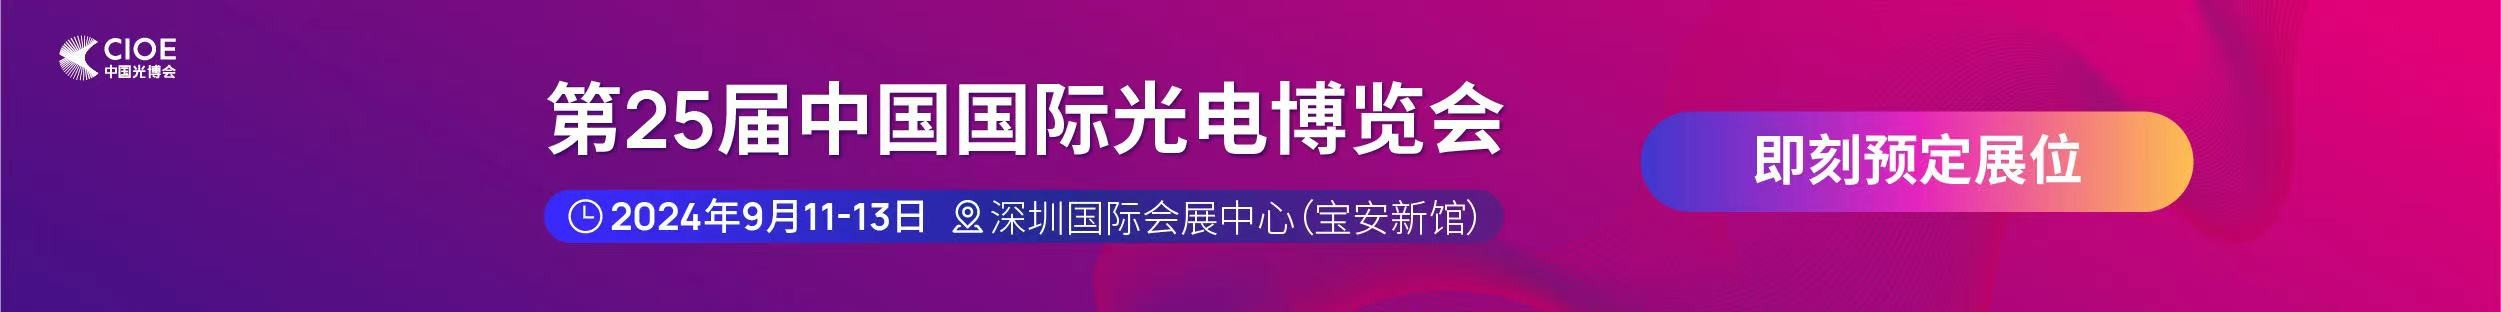 威尼斯欢乐娱人城官网受邀参展第25届中国国际光电博览会